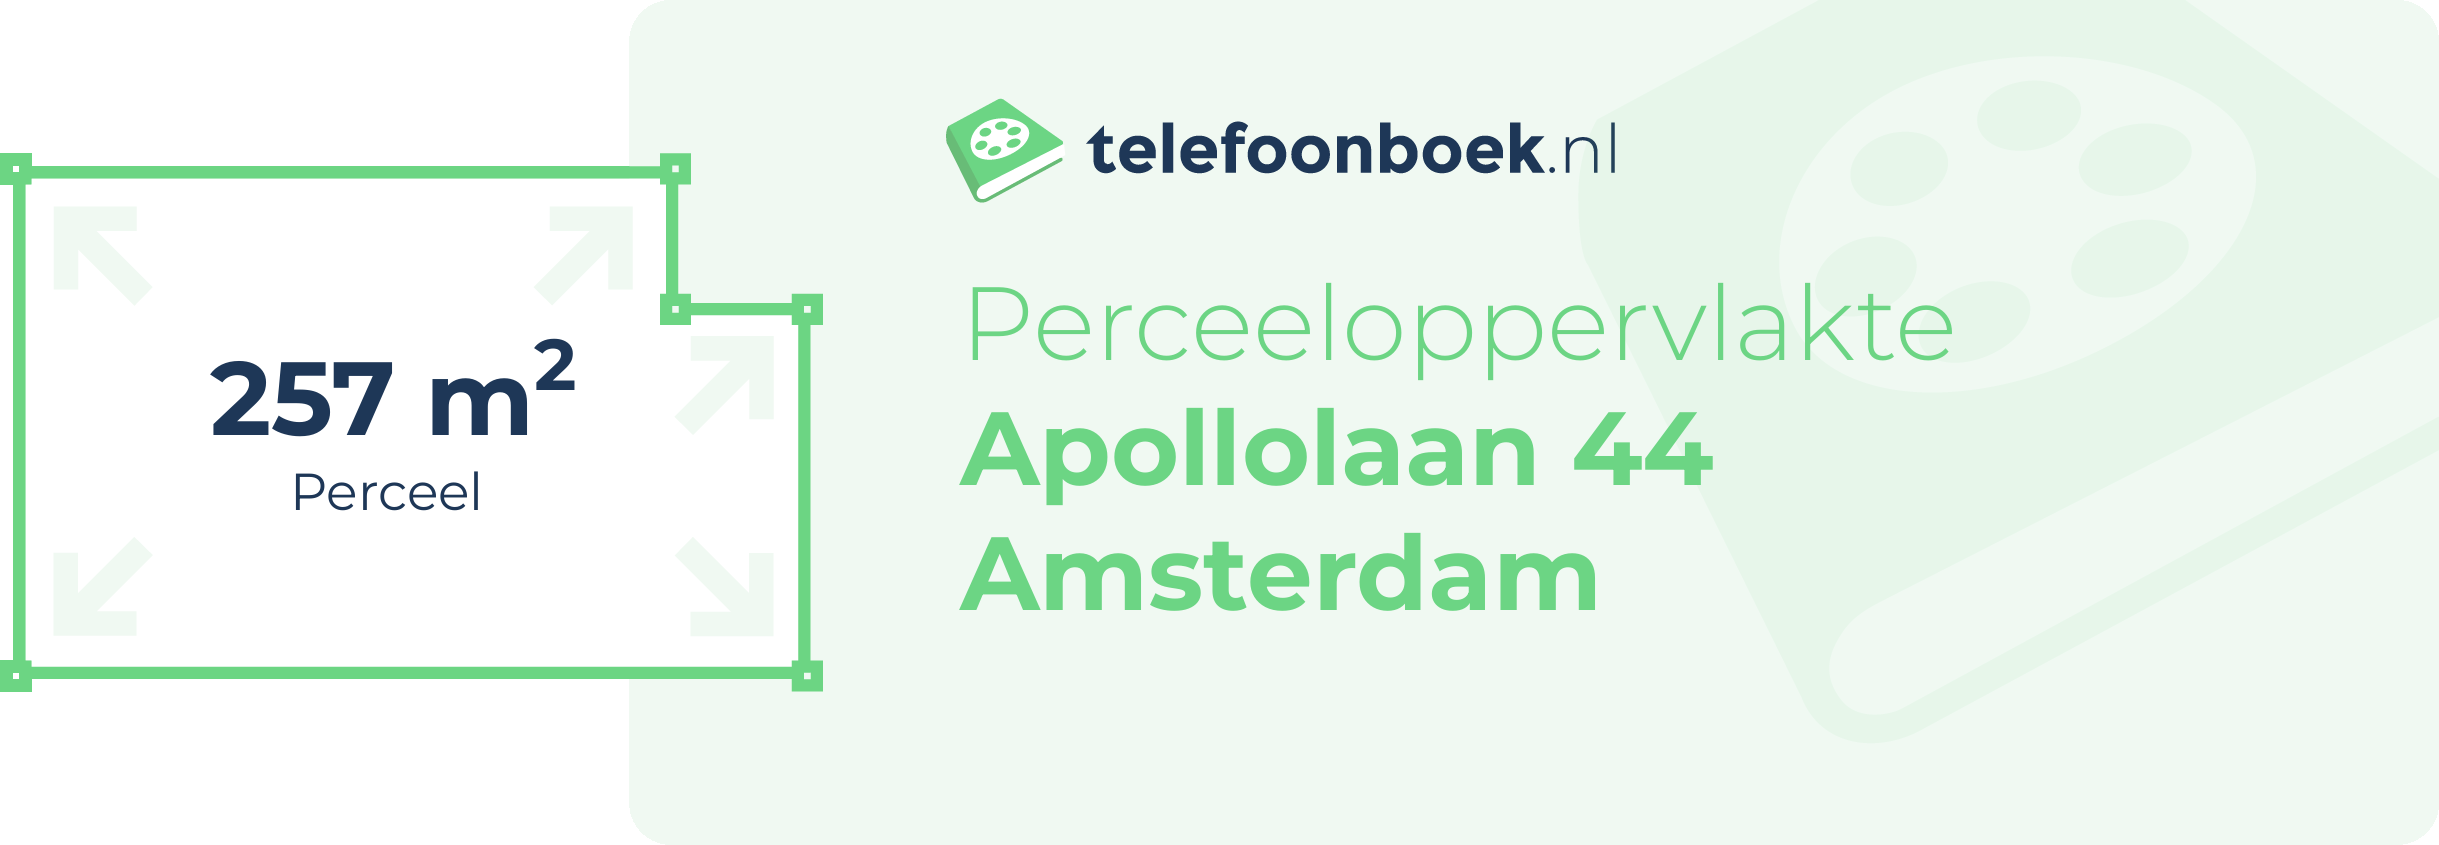 Perceeloppervlakte Apollolaan 44 Amsterdam